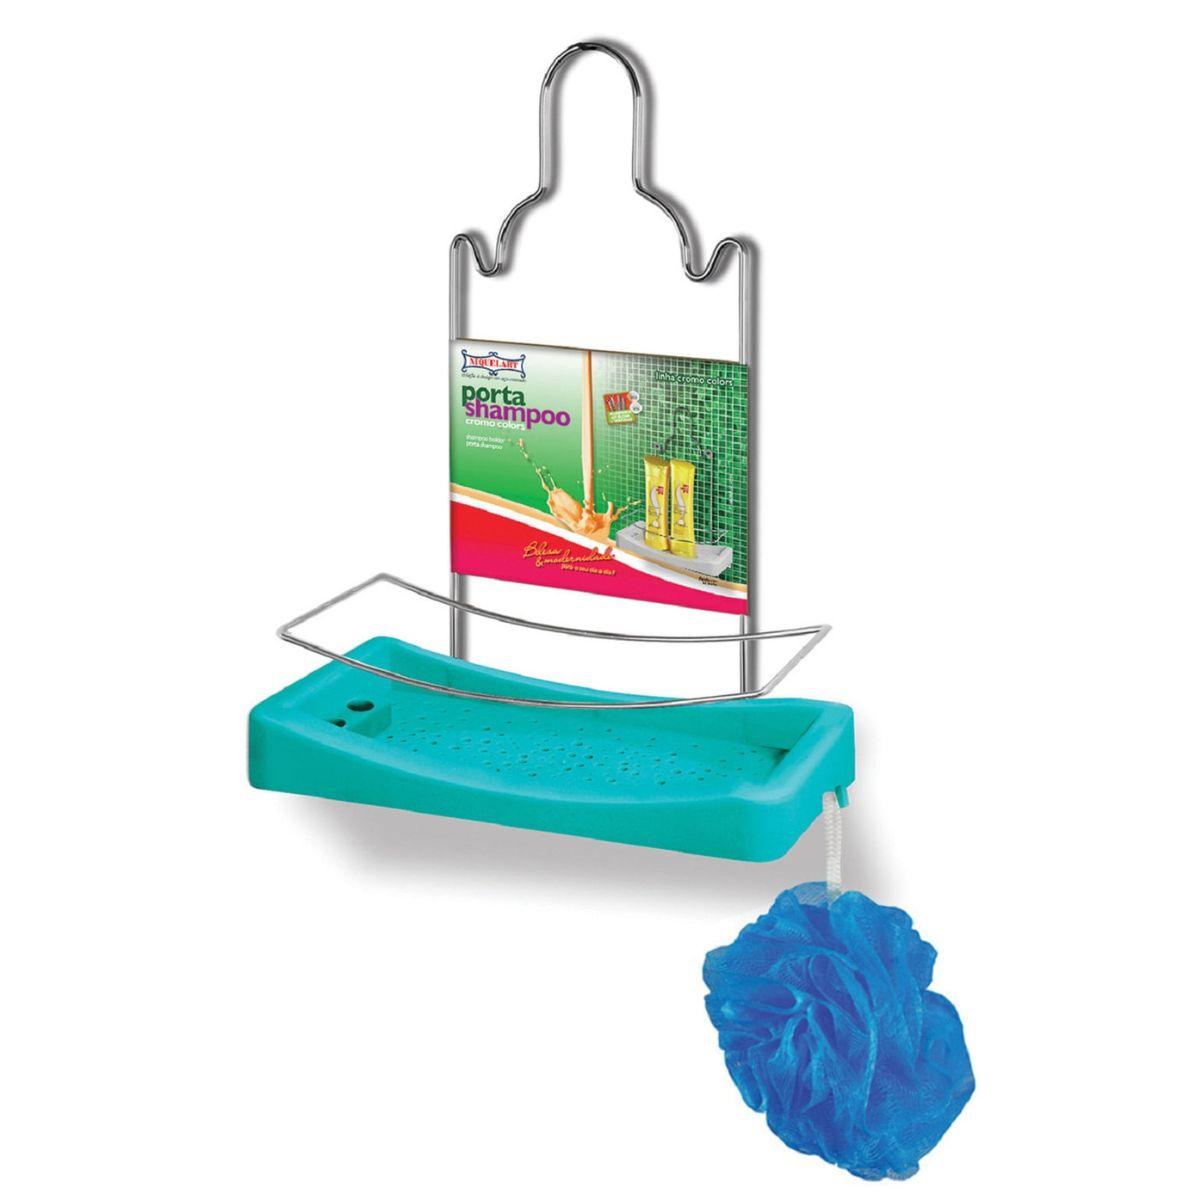 Porta Shampoo Simples Niquelart 348-6 Cromo Colors Aço e Plástico Turquesa - Palácio da Arte